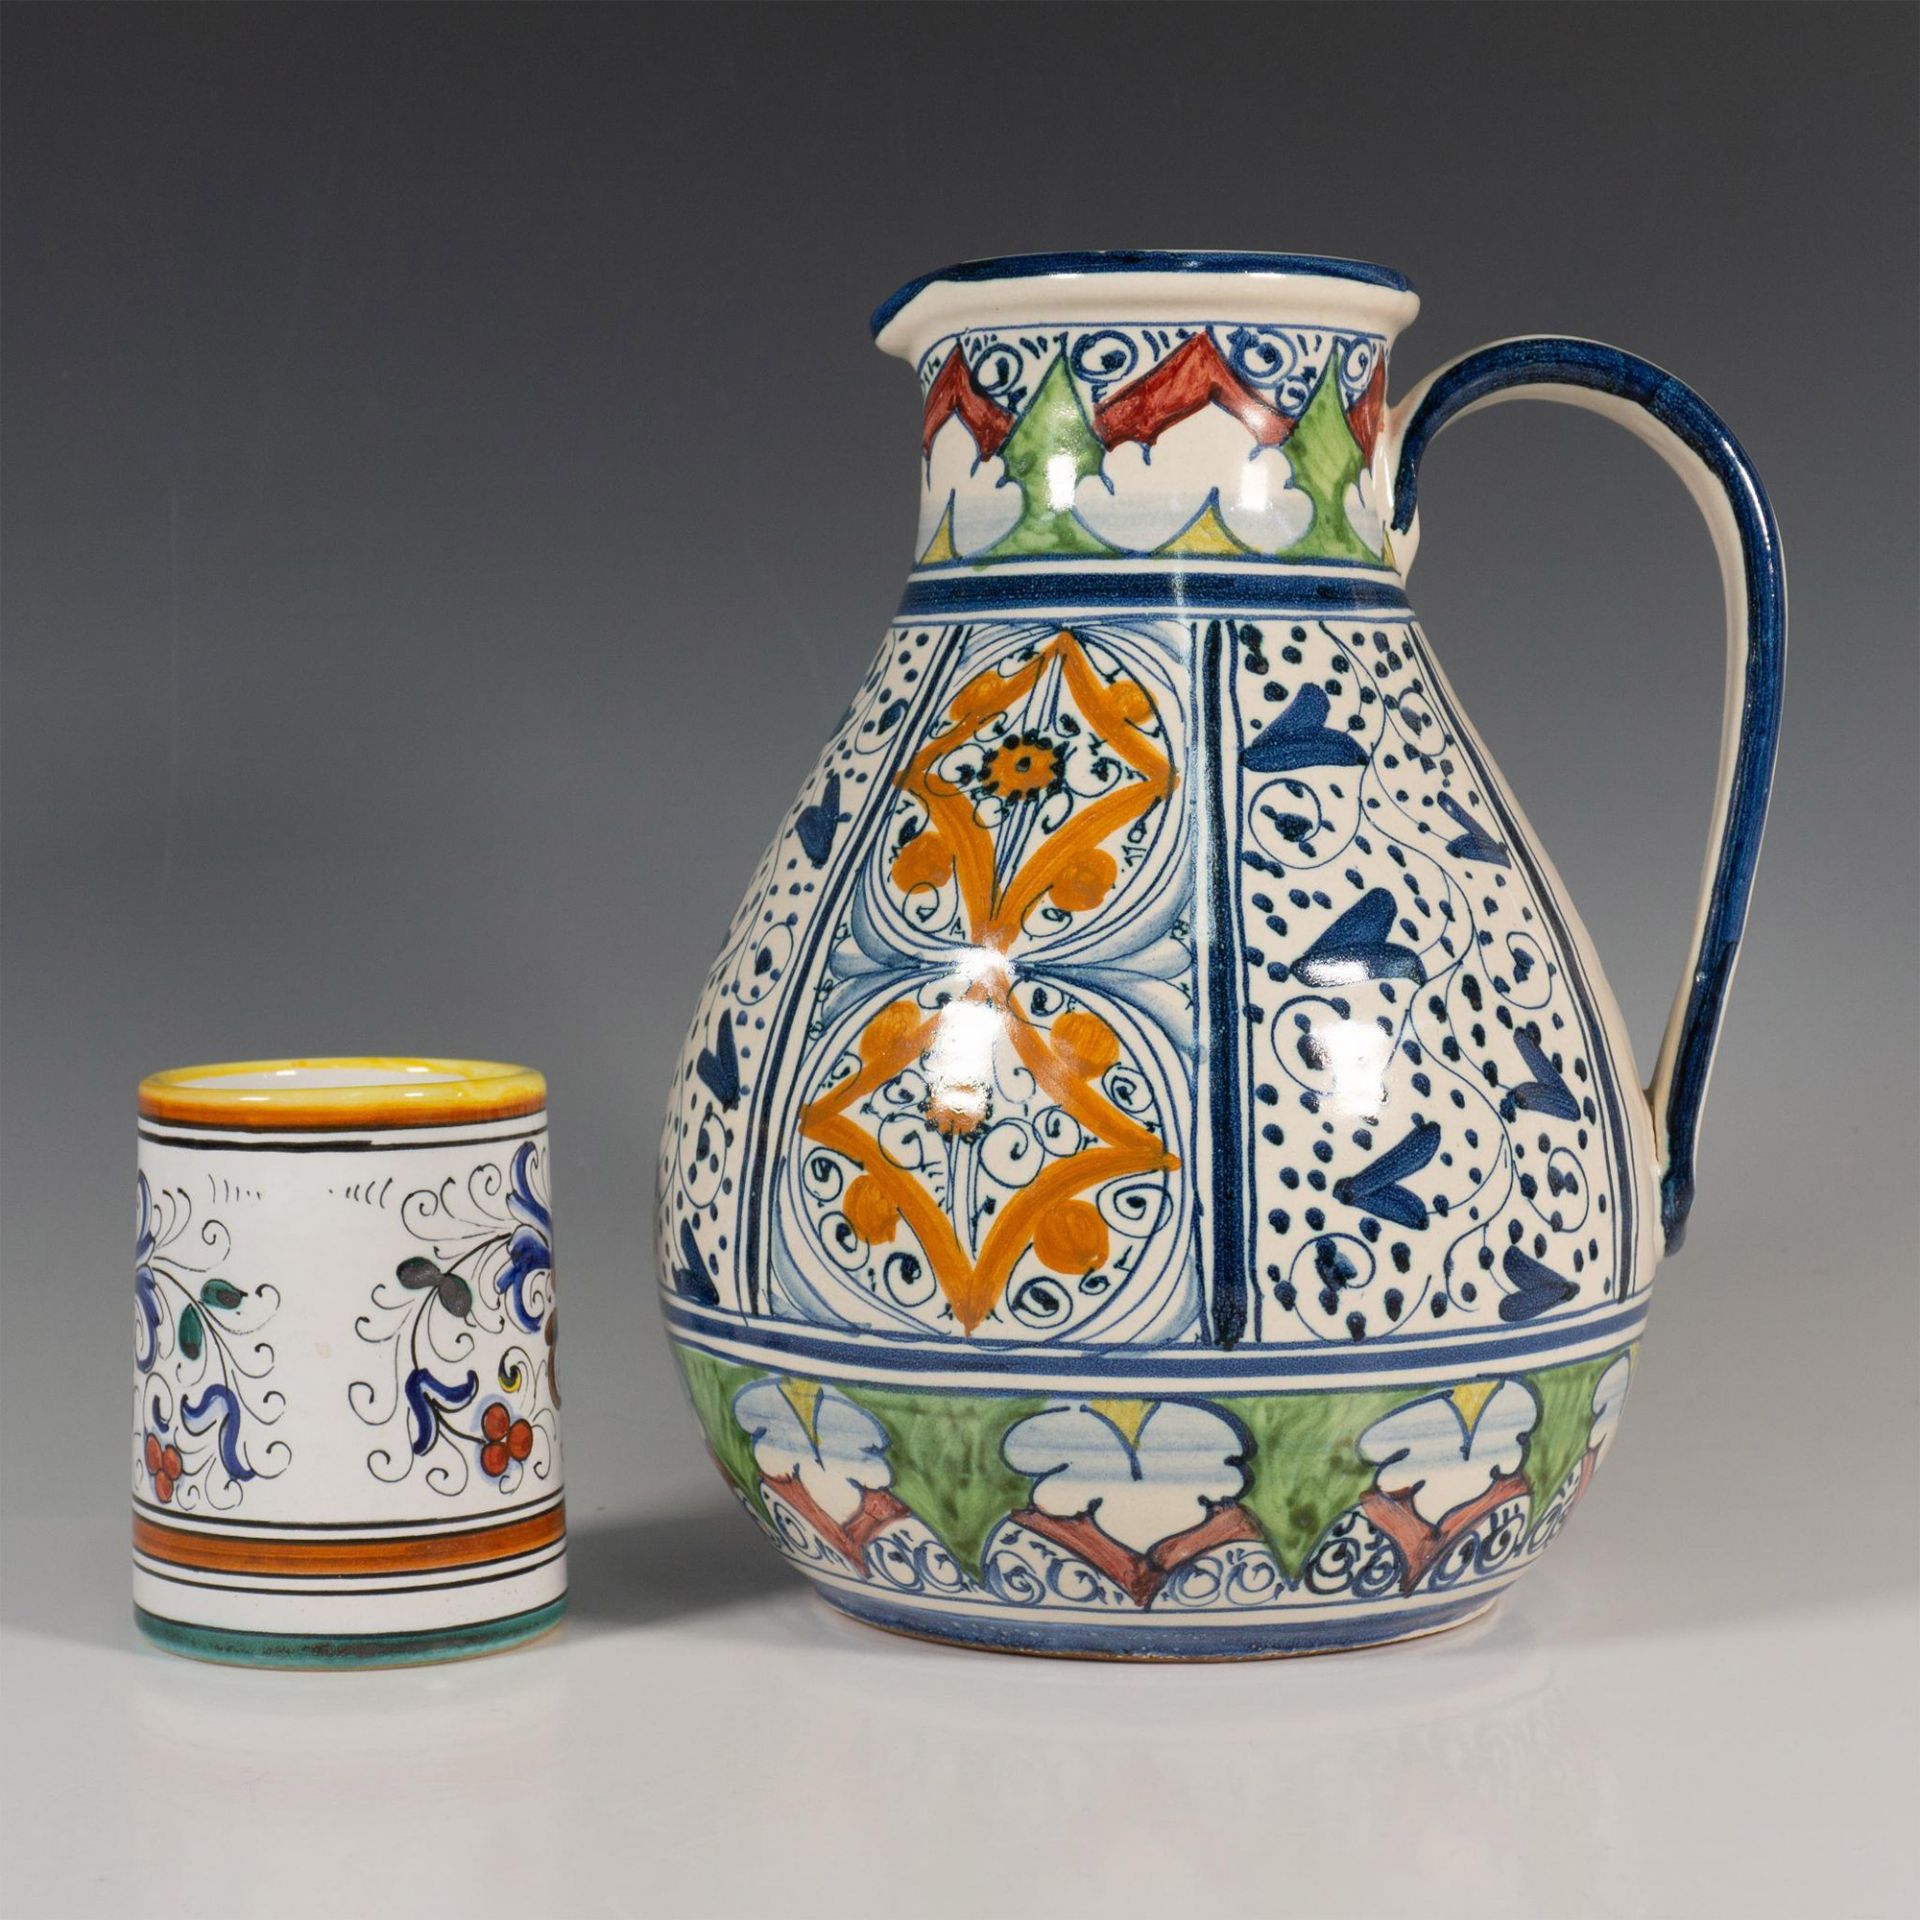 Original Hand-Painted Ceramic Carafe & S. Gimignano Tumbler - Bild 2 aus 5